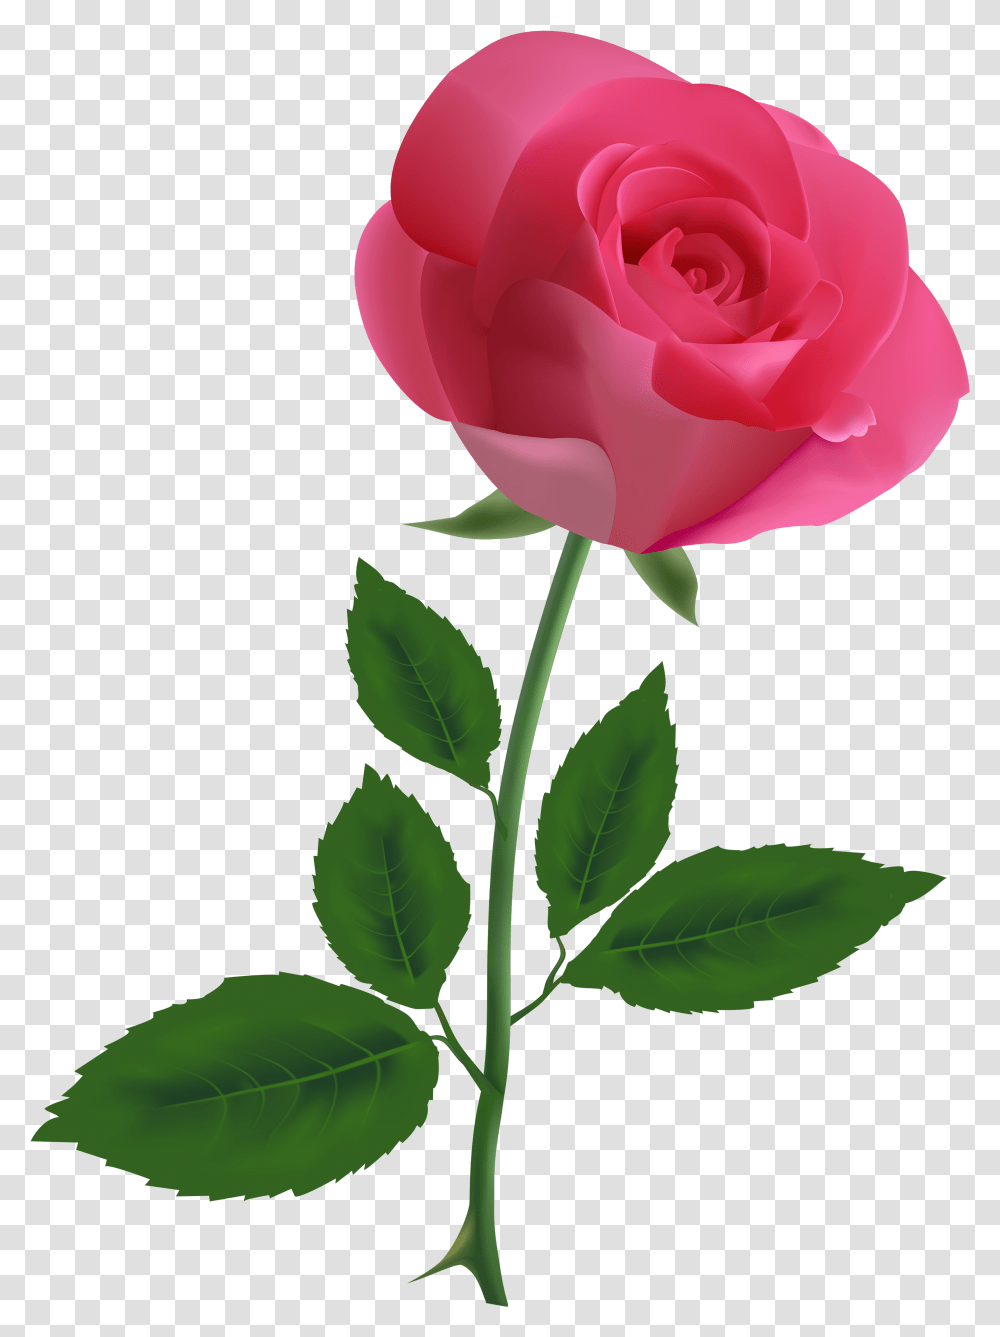 Pink Rose Pngpng Image Pink Rose Clipart, Flower, Plant, Blossom, Petal Transparent Png